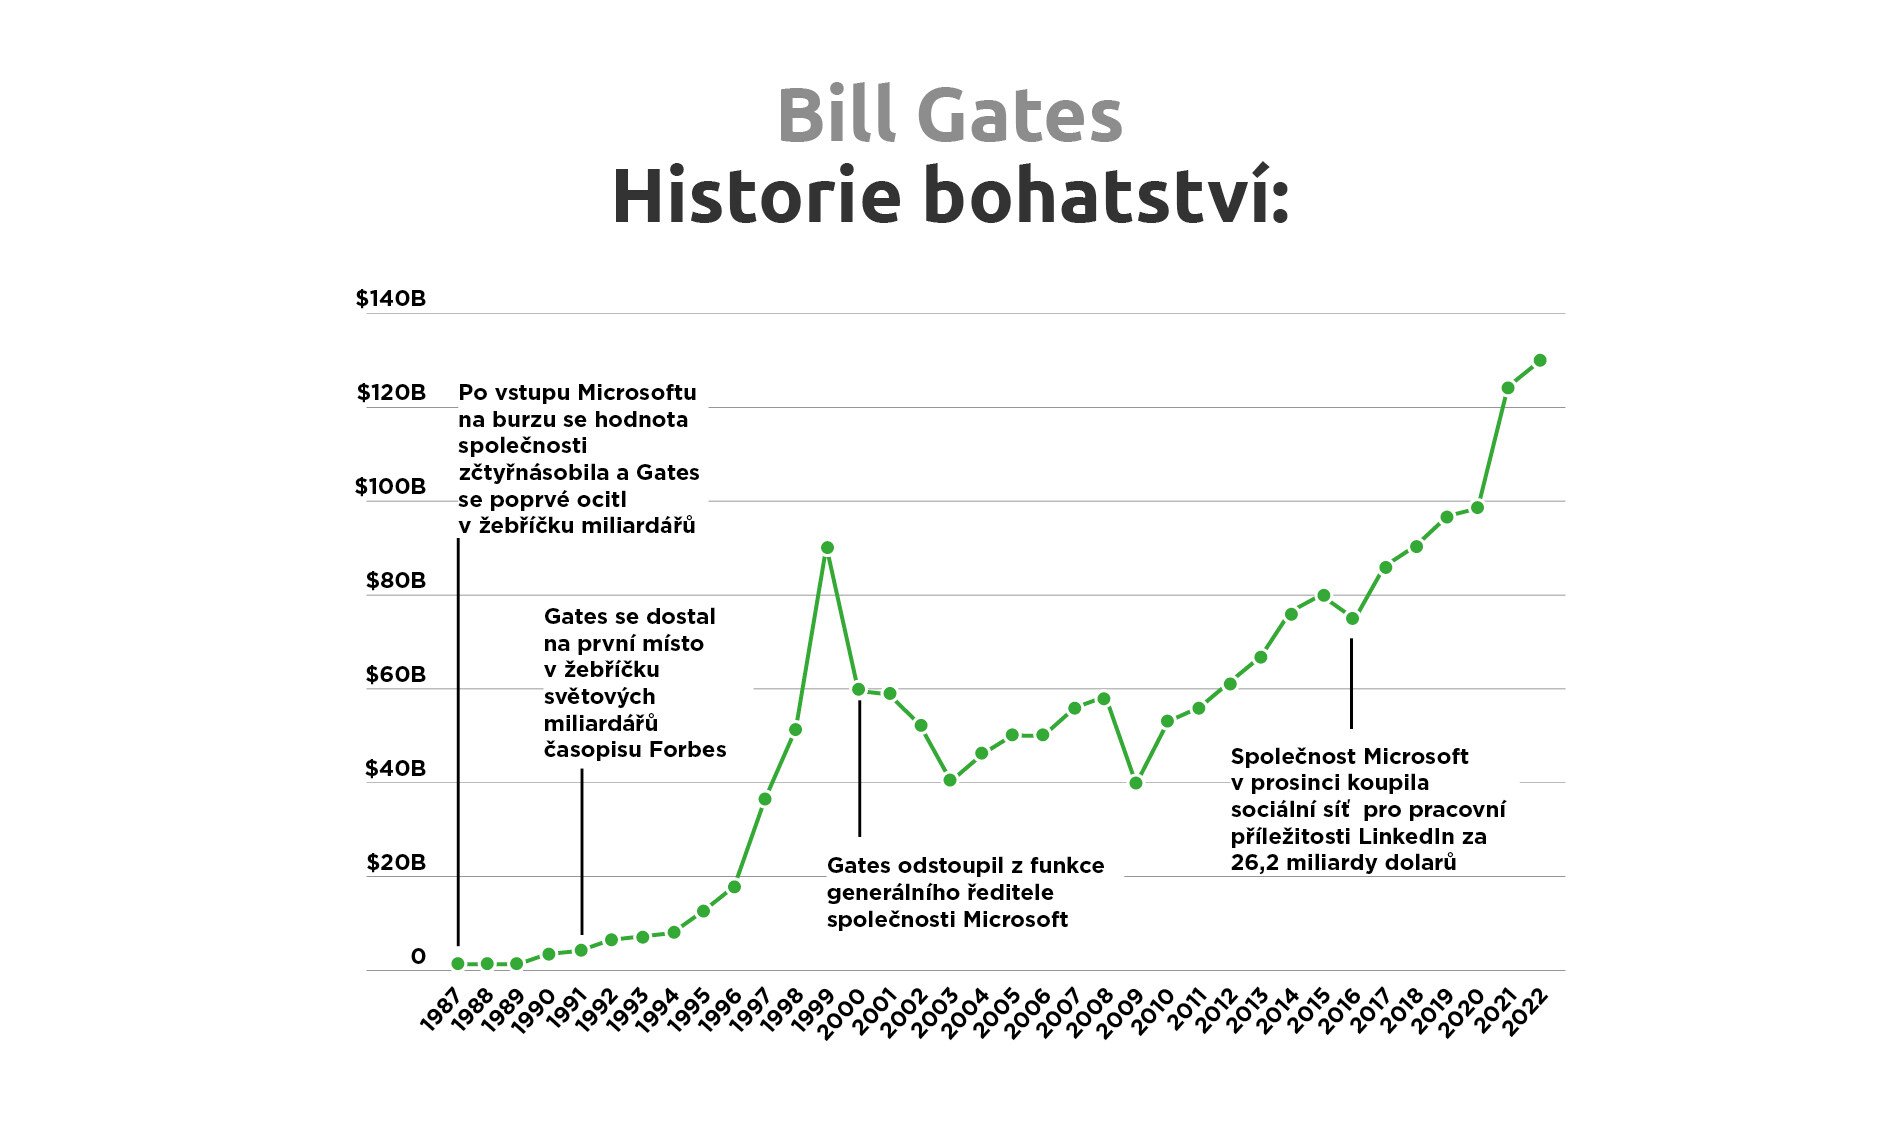 Cesta k miliardám. Co všechno dnes patří Billu Gatesovi?